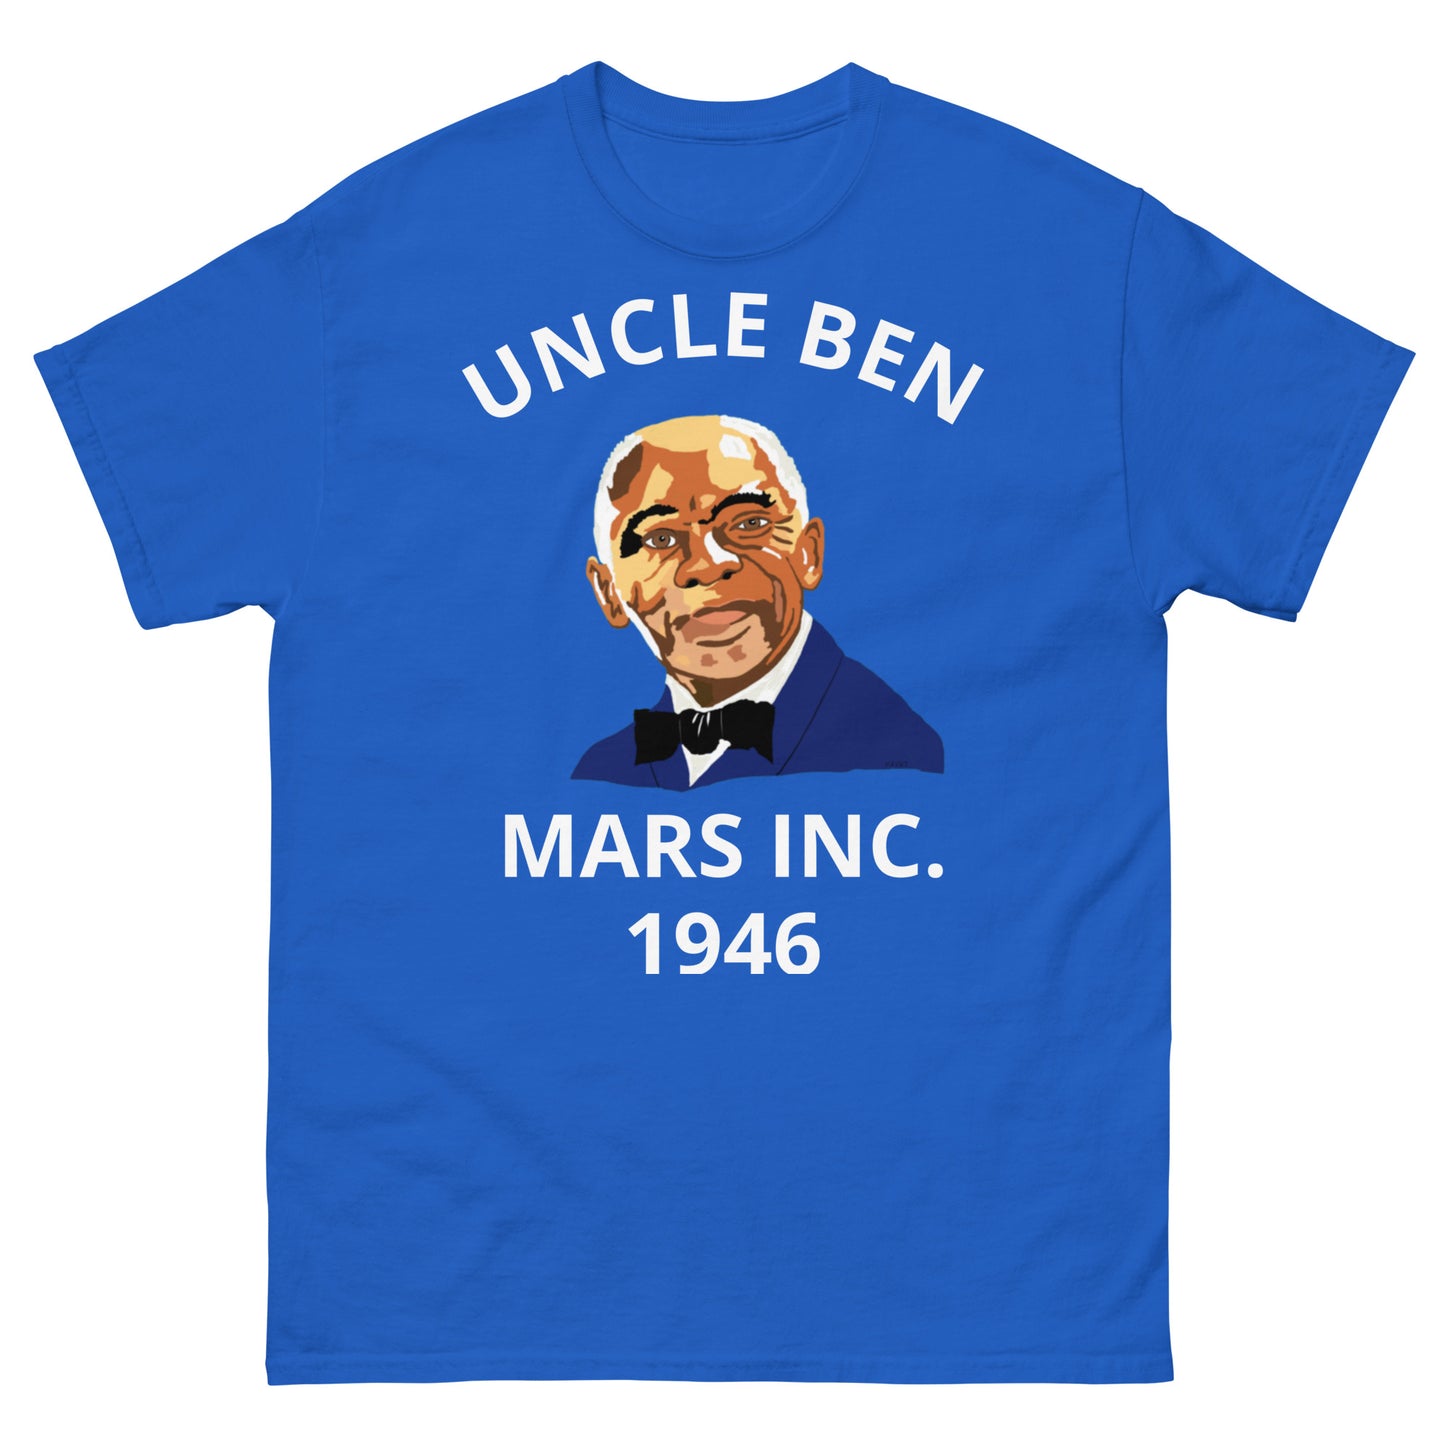 UNCLE BEN Men's classic tee